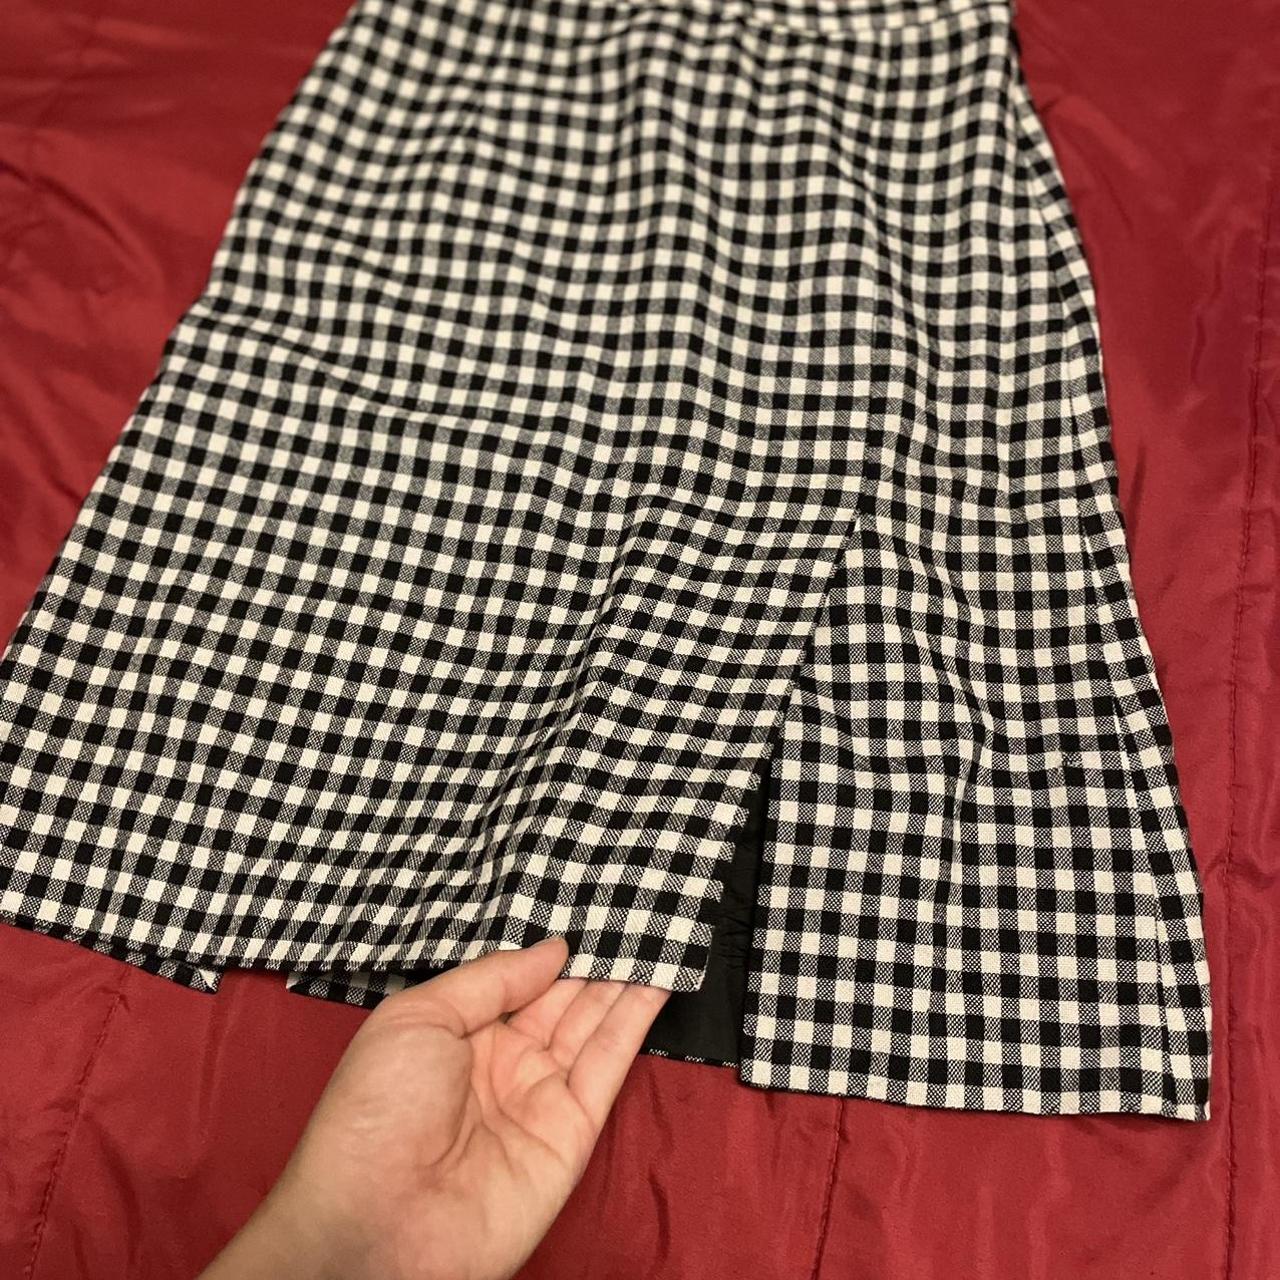 Moschino Cheap & Chic Women's Black and White Skirt (2)